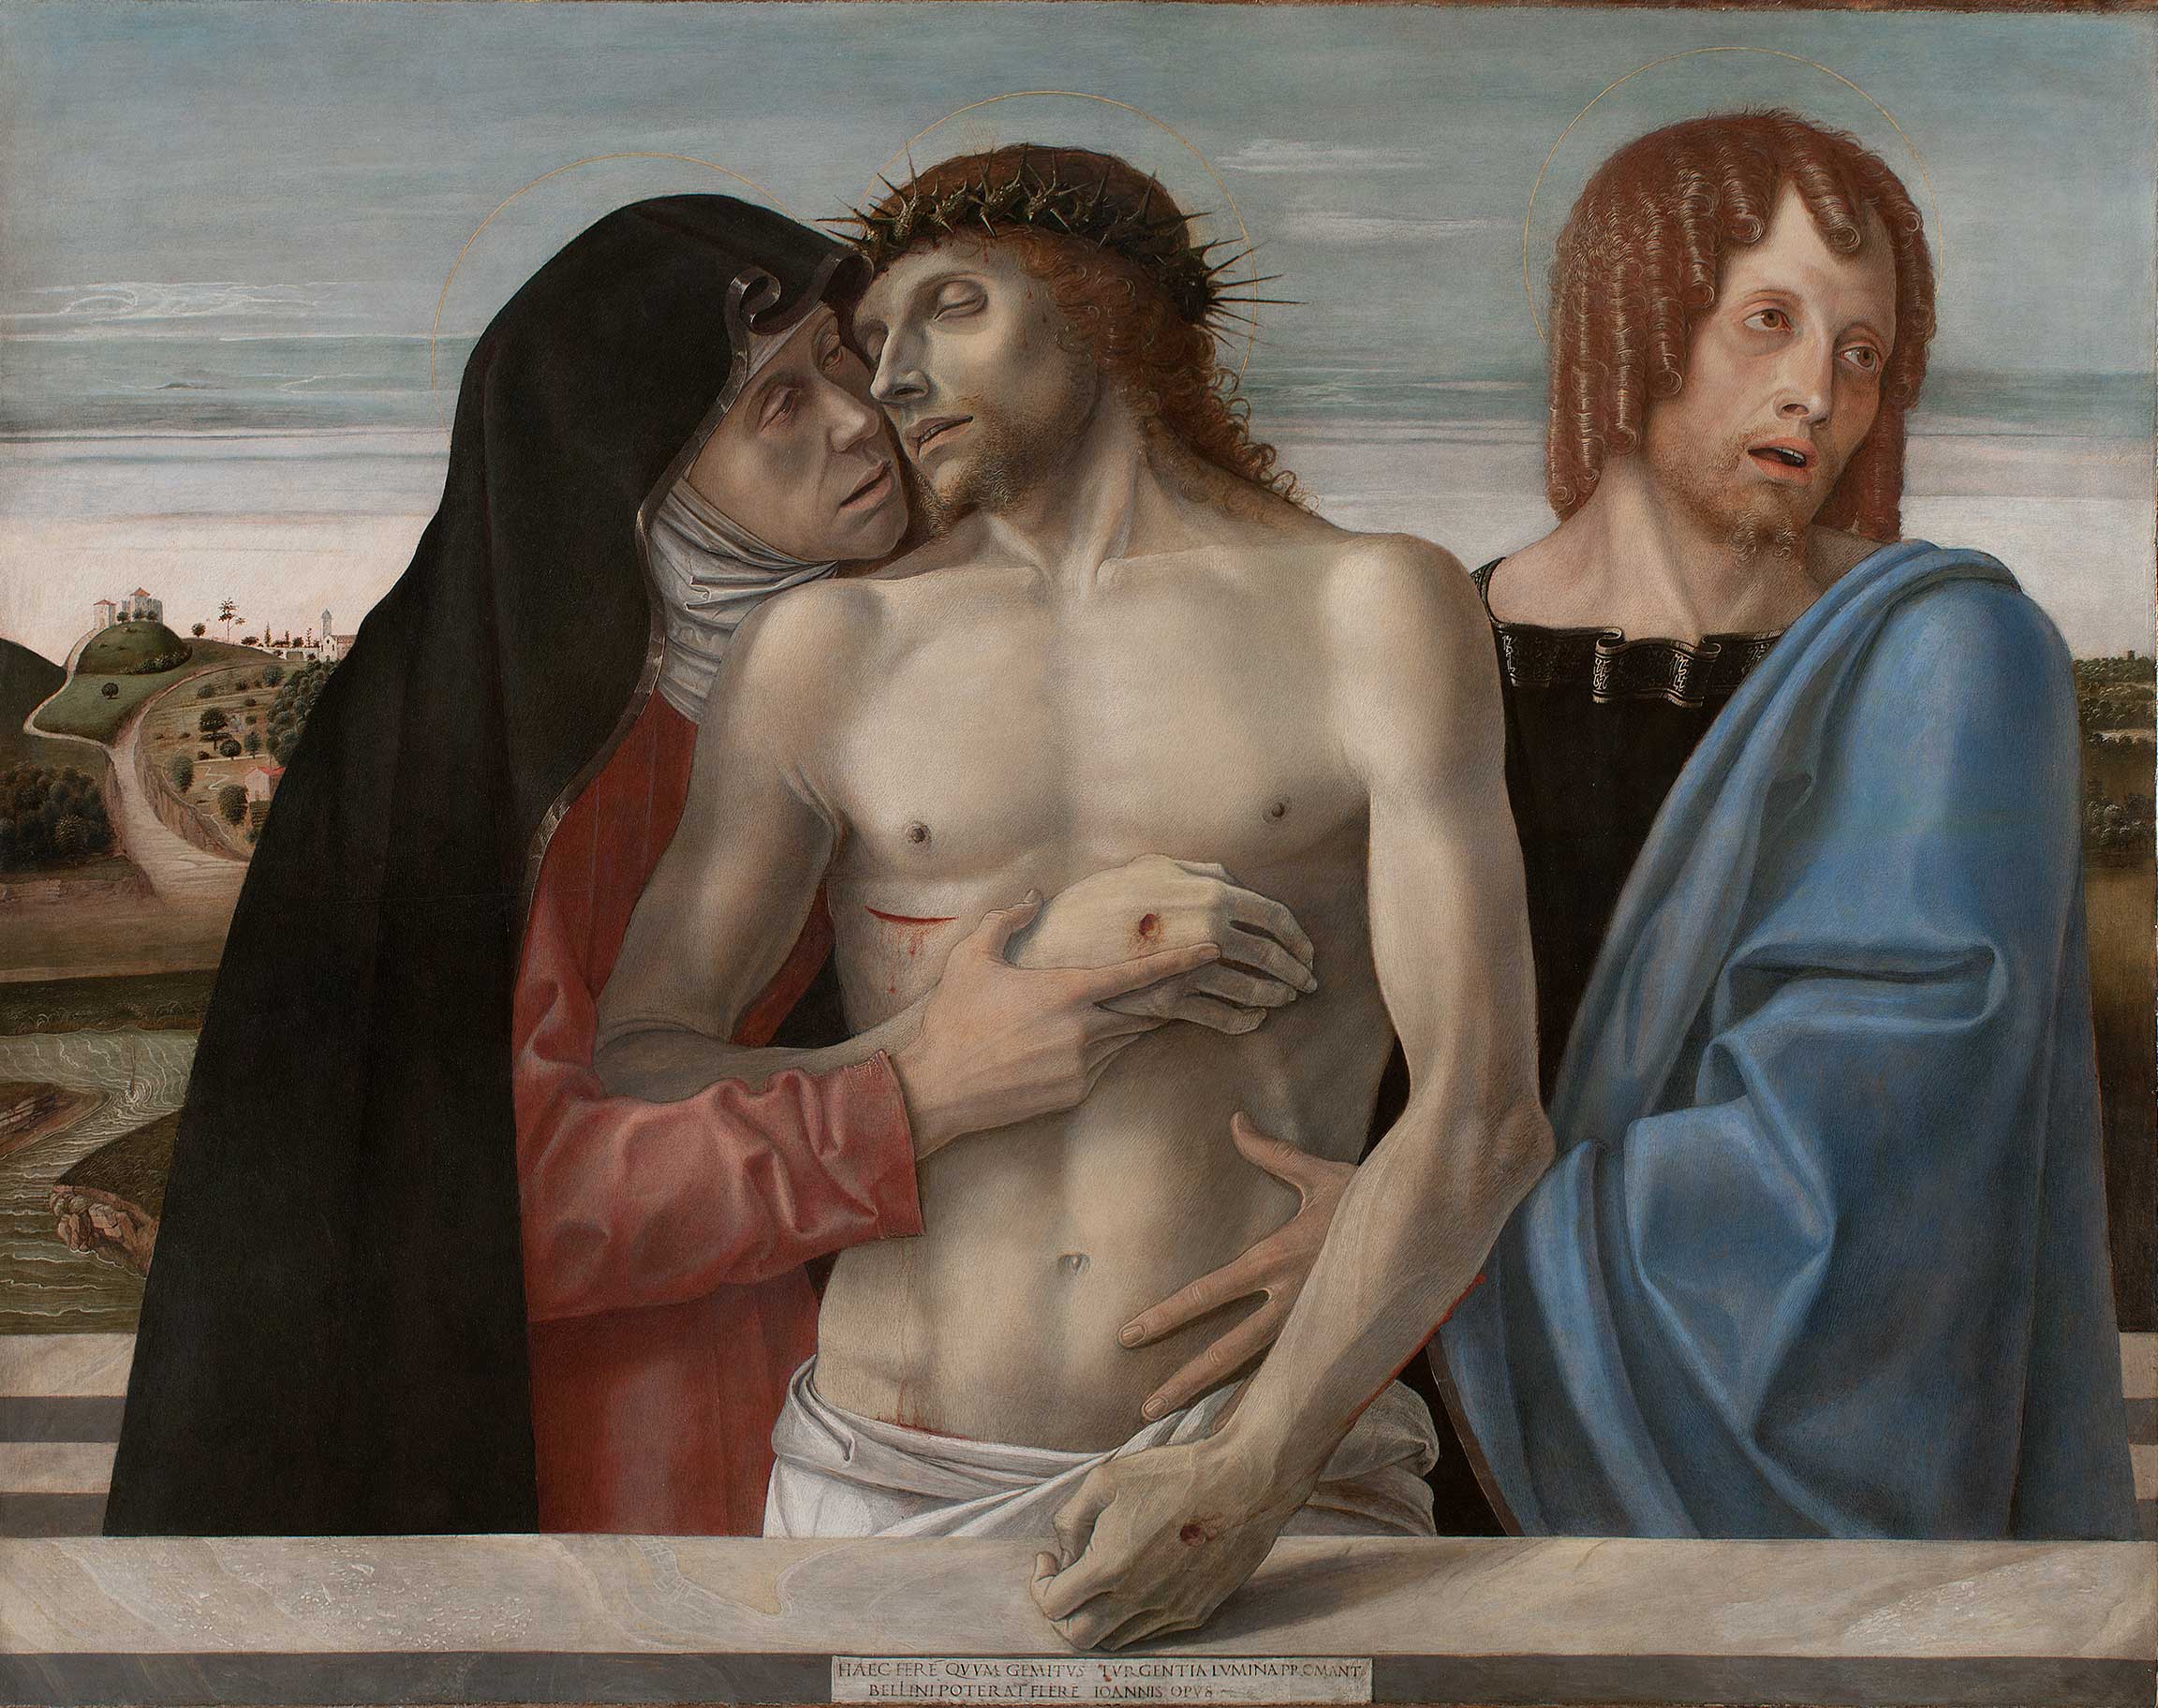 Pietà by Giovanni Bellini - c. 1460 - 86 × 107 cm Pinacoteca di Brera